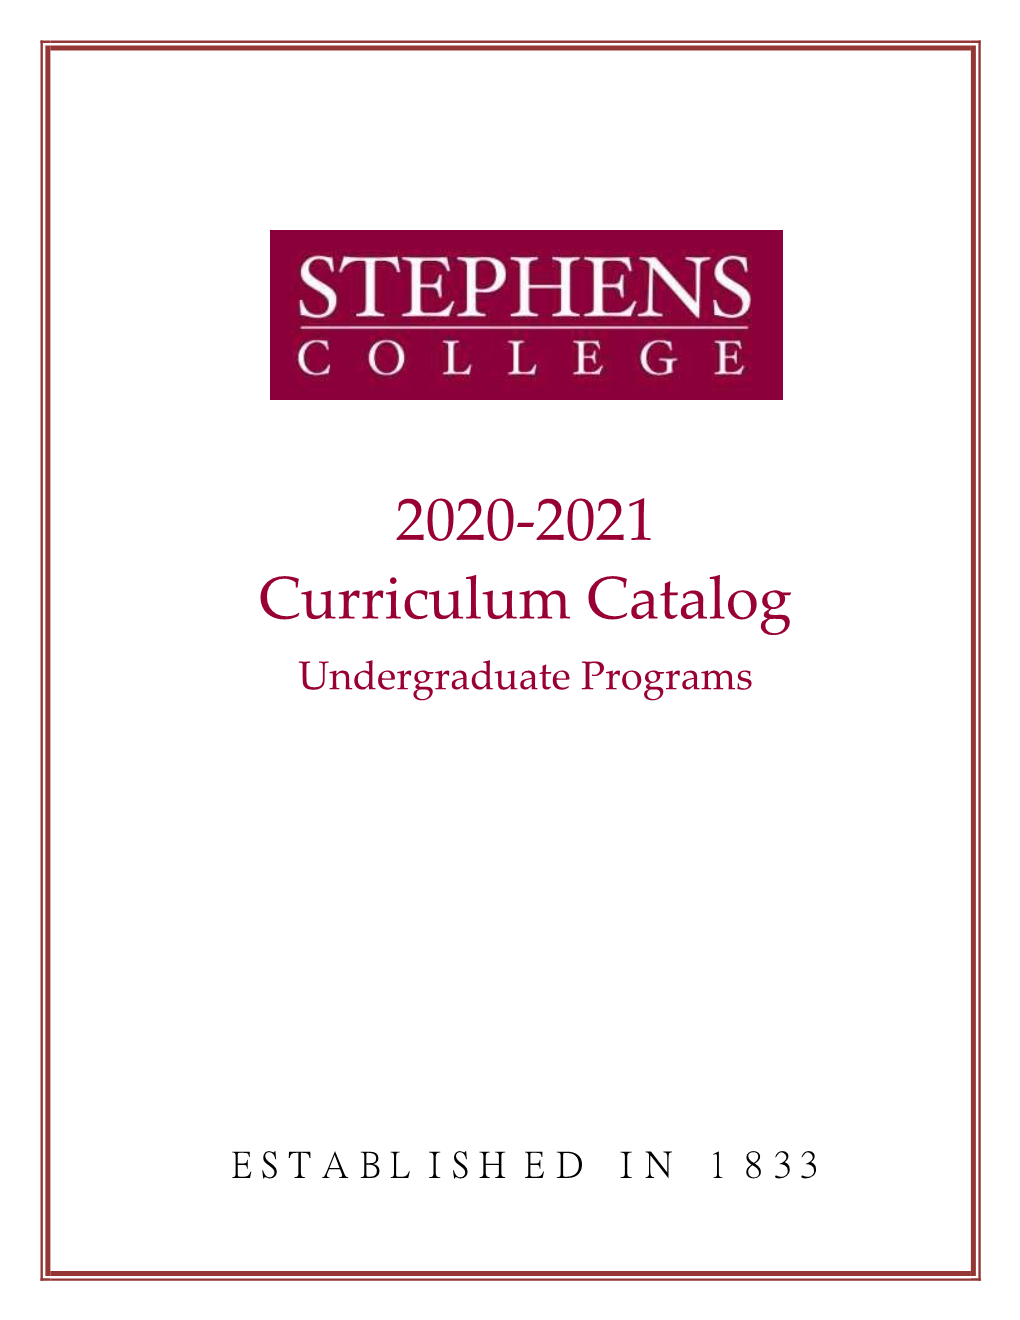 2020-2021 Undergraduate Curriculum Catalog